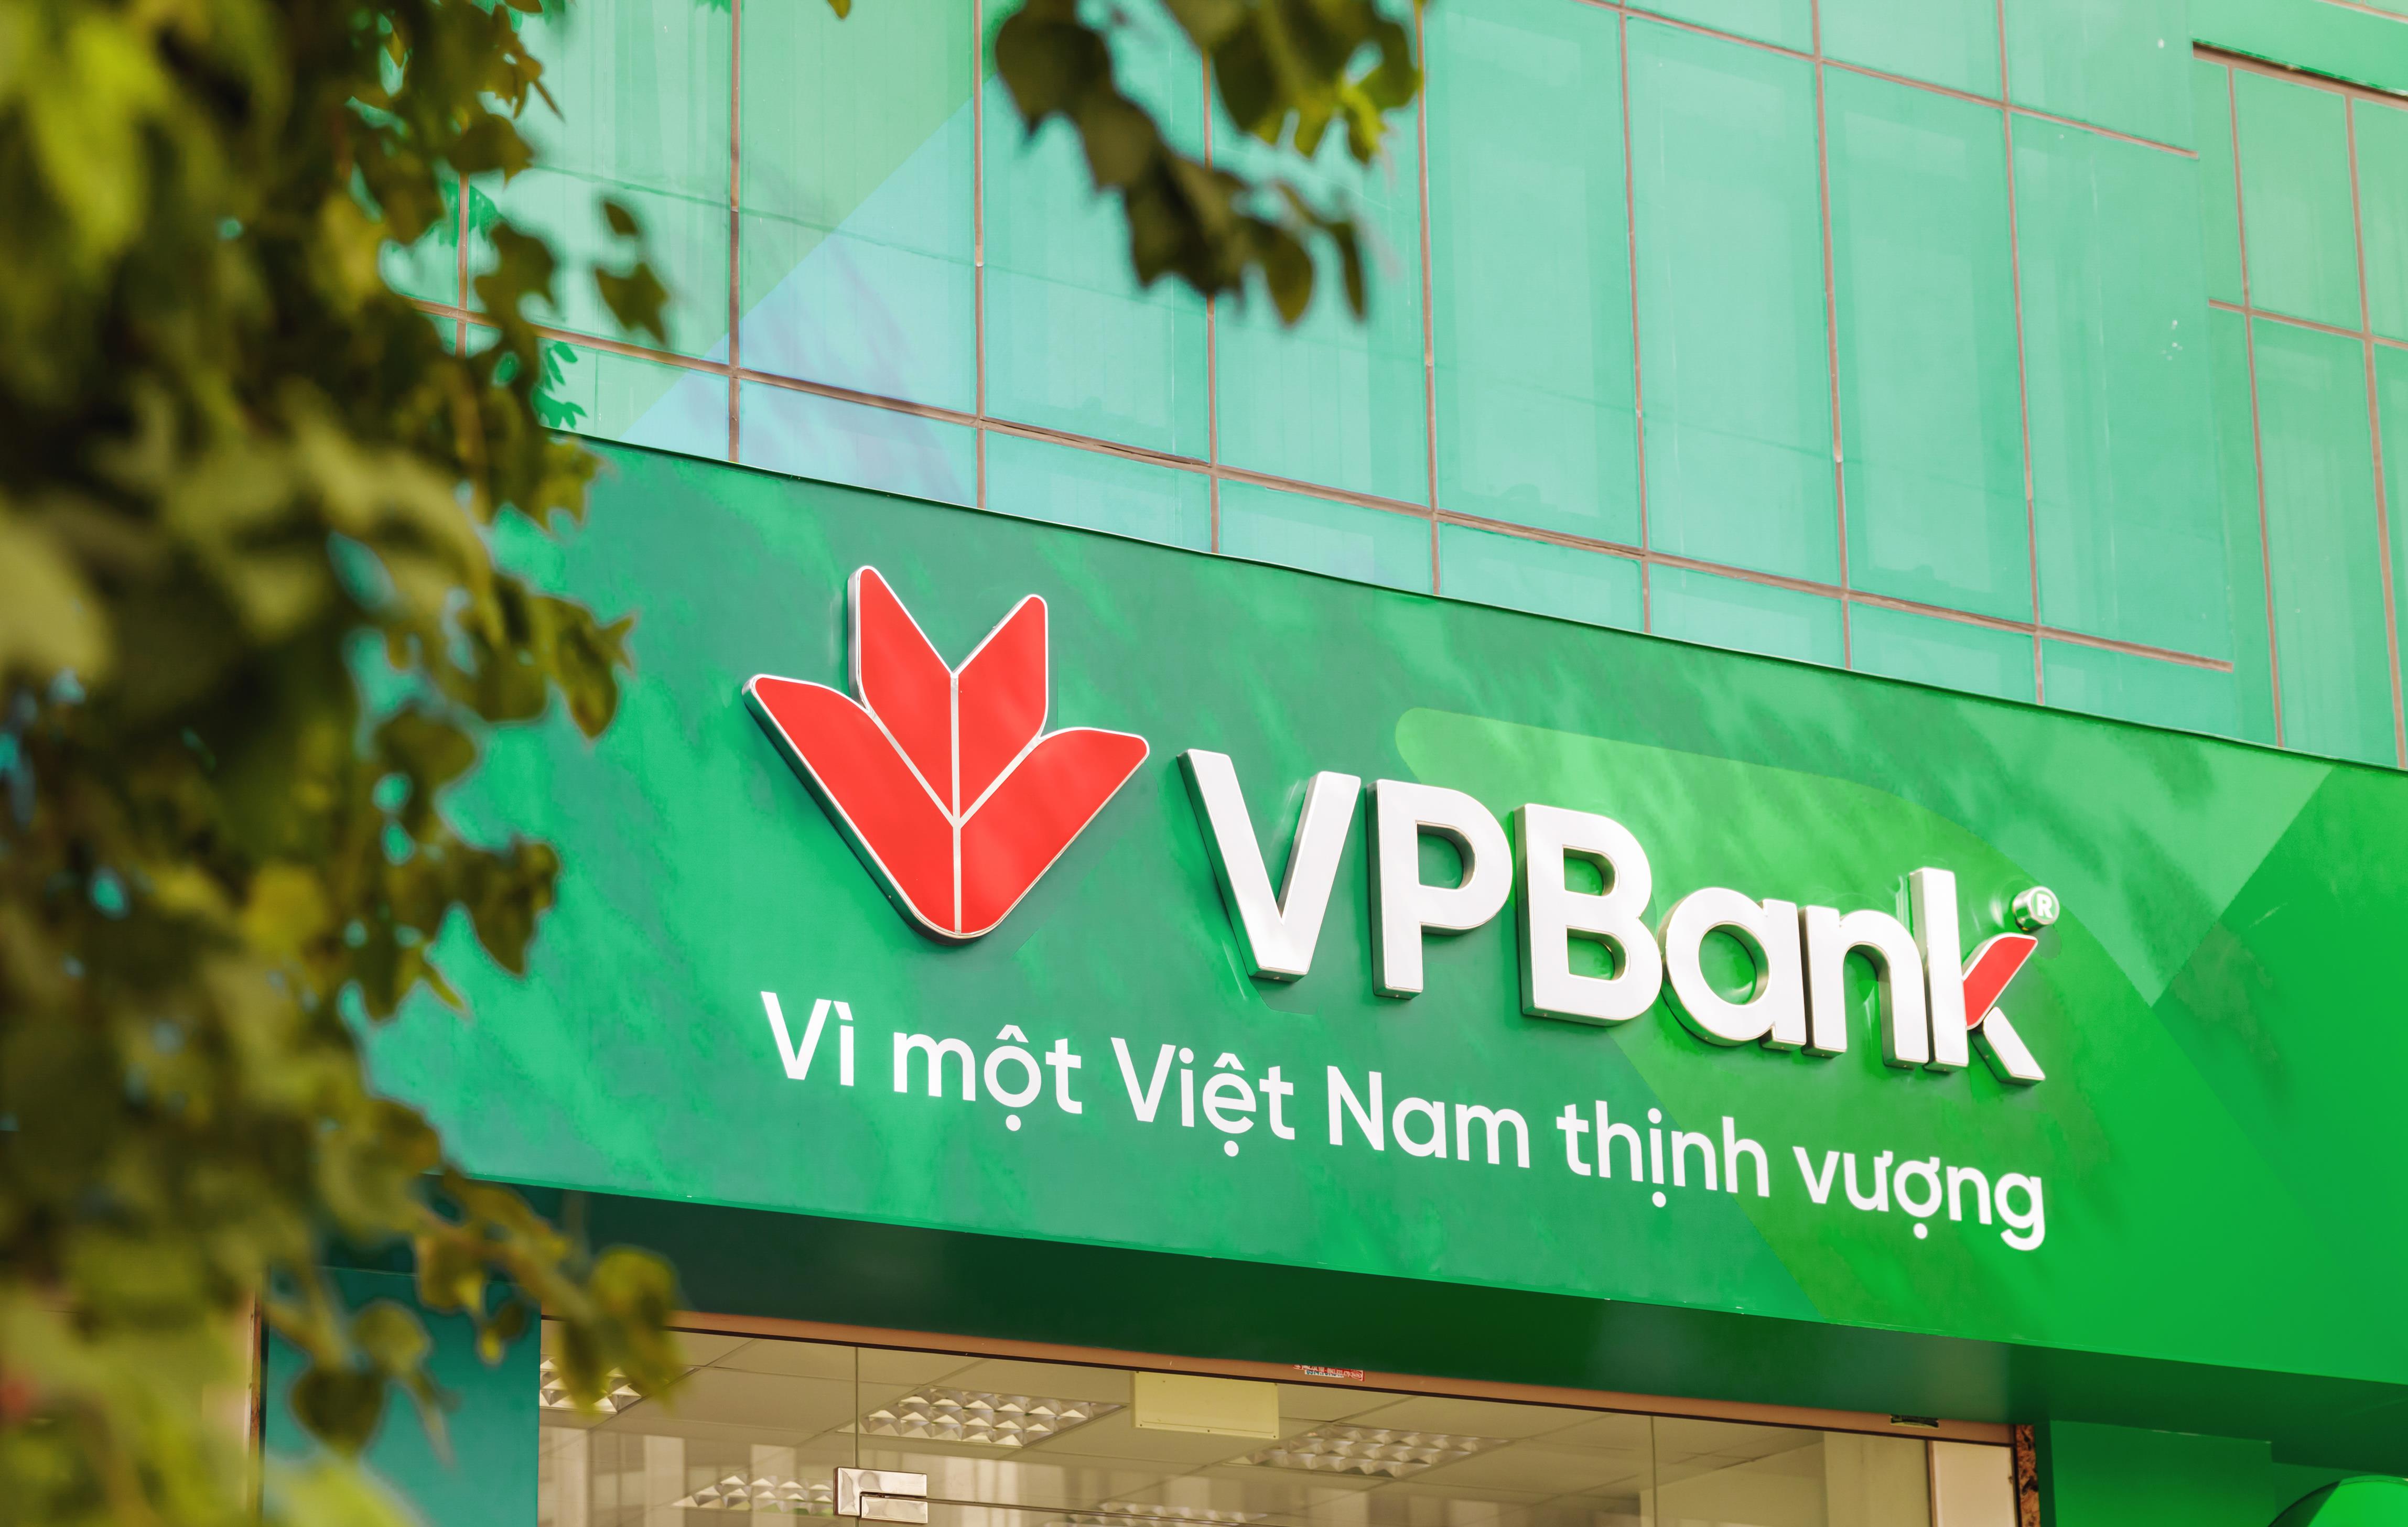 vpbank-thay-đổi-mặt-tiền-chi-nhánh-theo-định-vị-mới-11.jpg